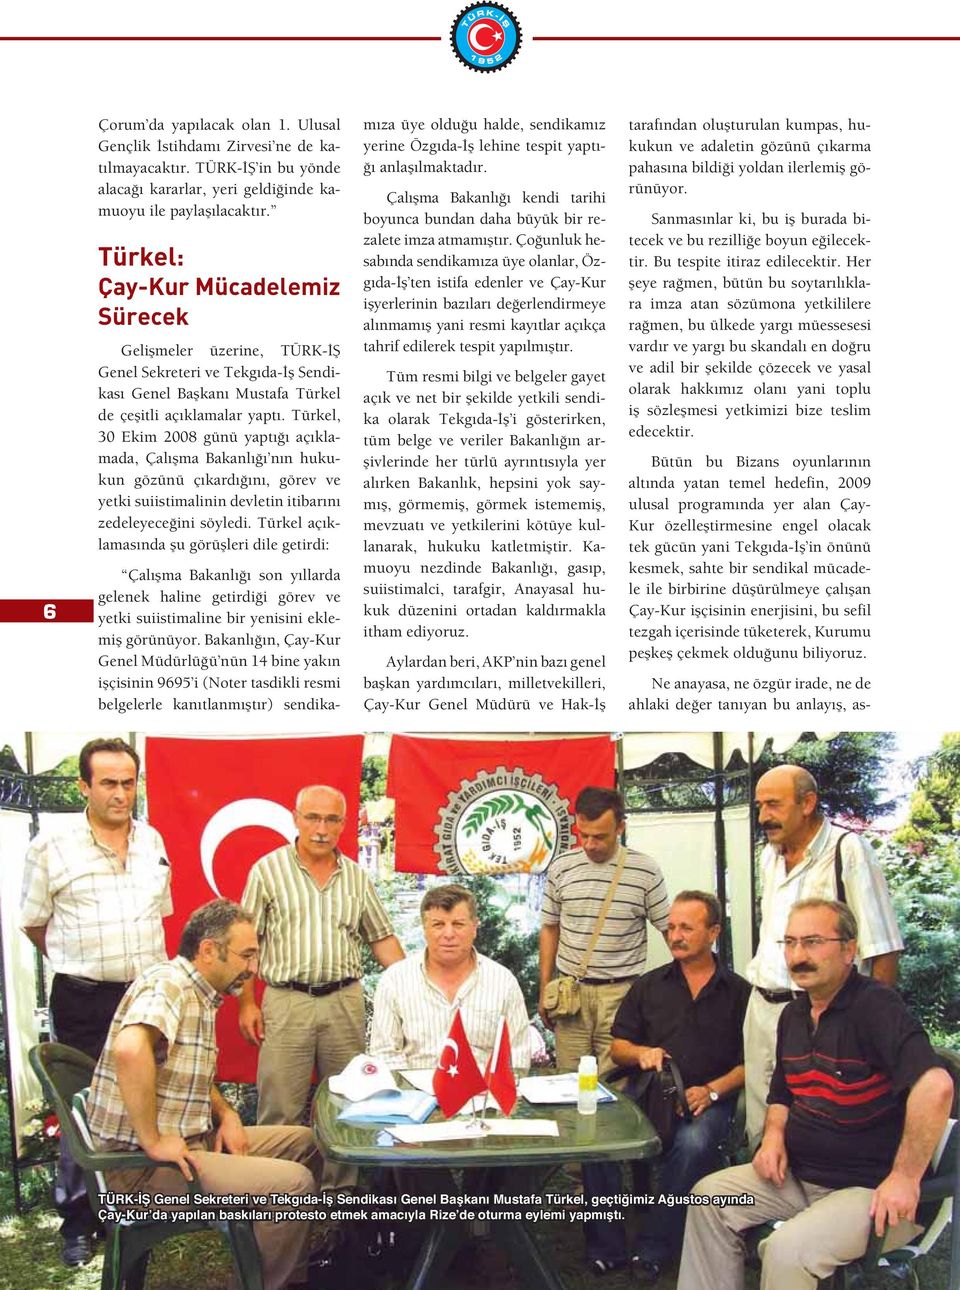 Türkel, 30 Ekim 2008 günü yaptı ı açıklamada, Çalı ma Bakanlı ı nın hukukun gözünü çıkardı ını, görev ve yetki suiistimalinin devletin itibarını zedeleyece ini söyledi.